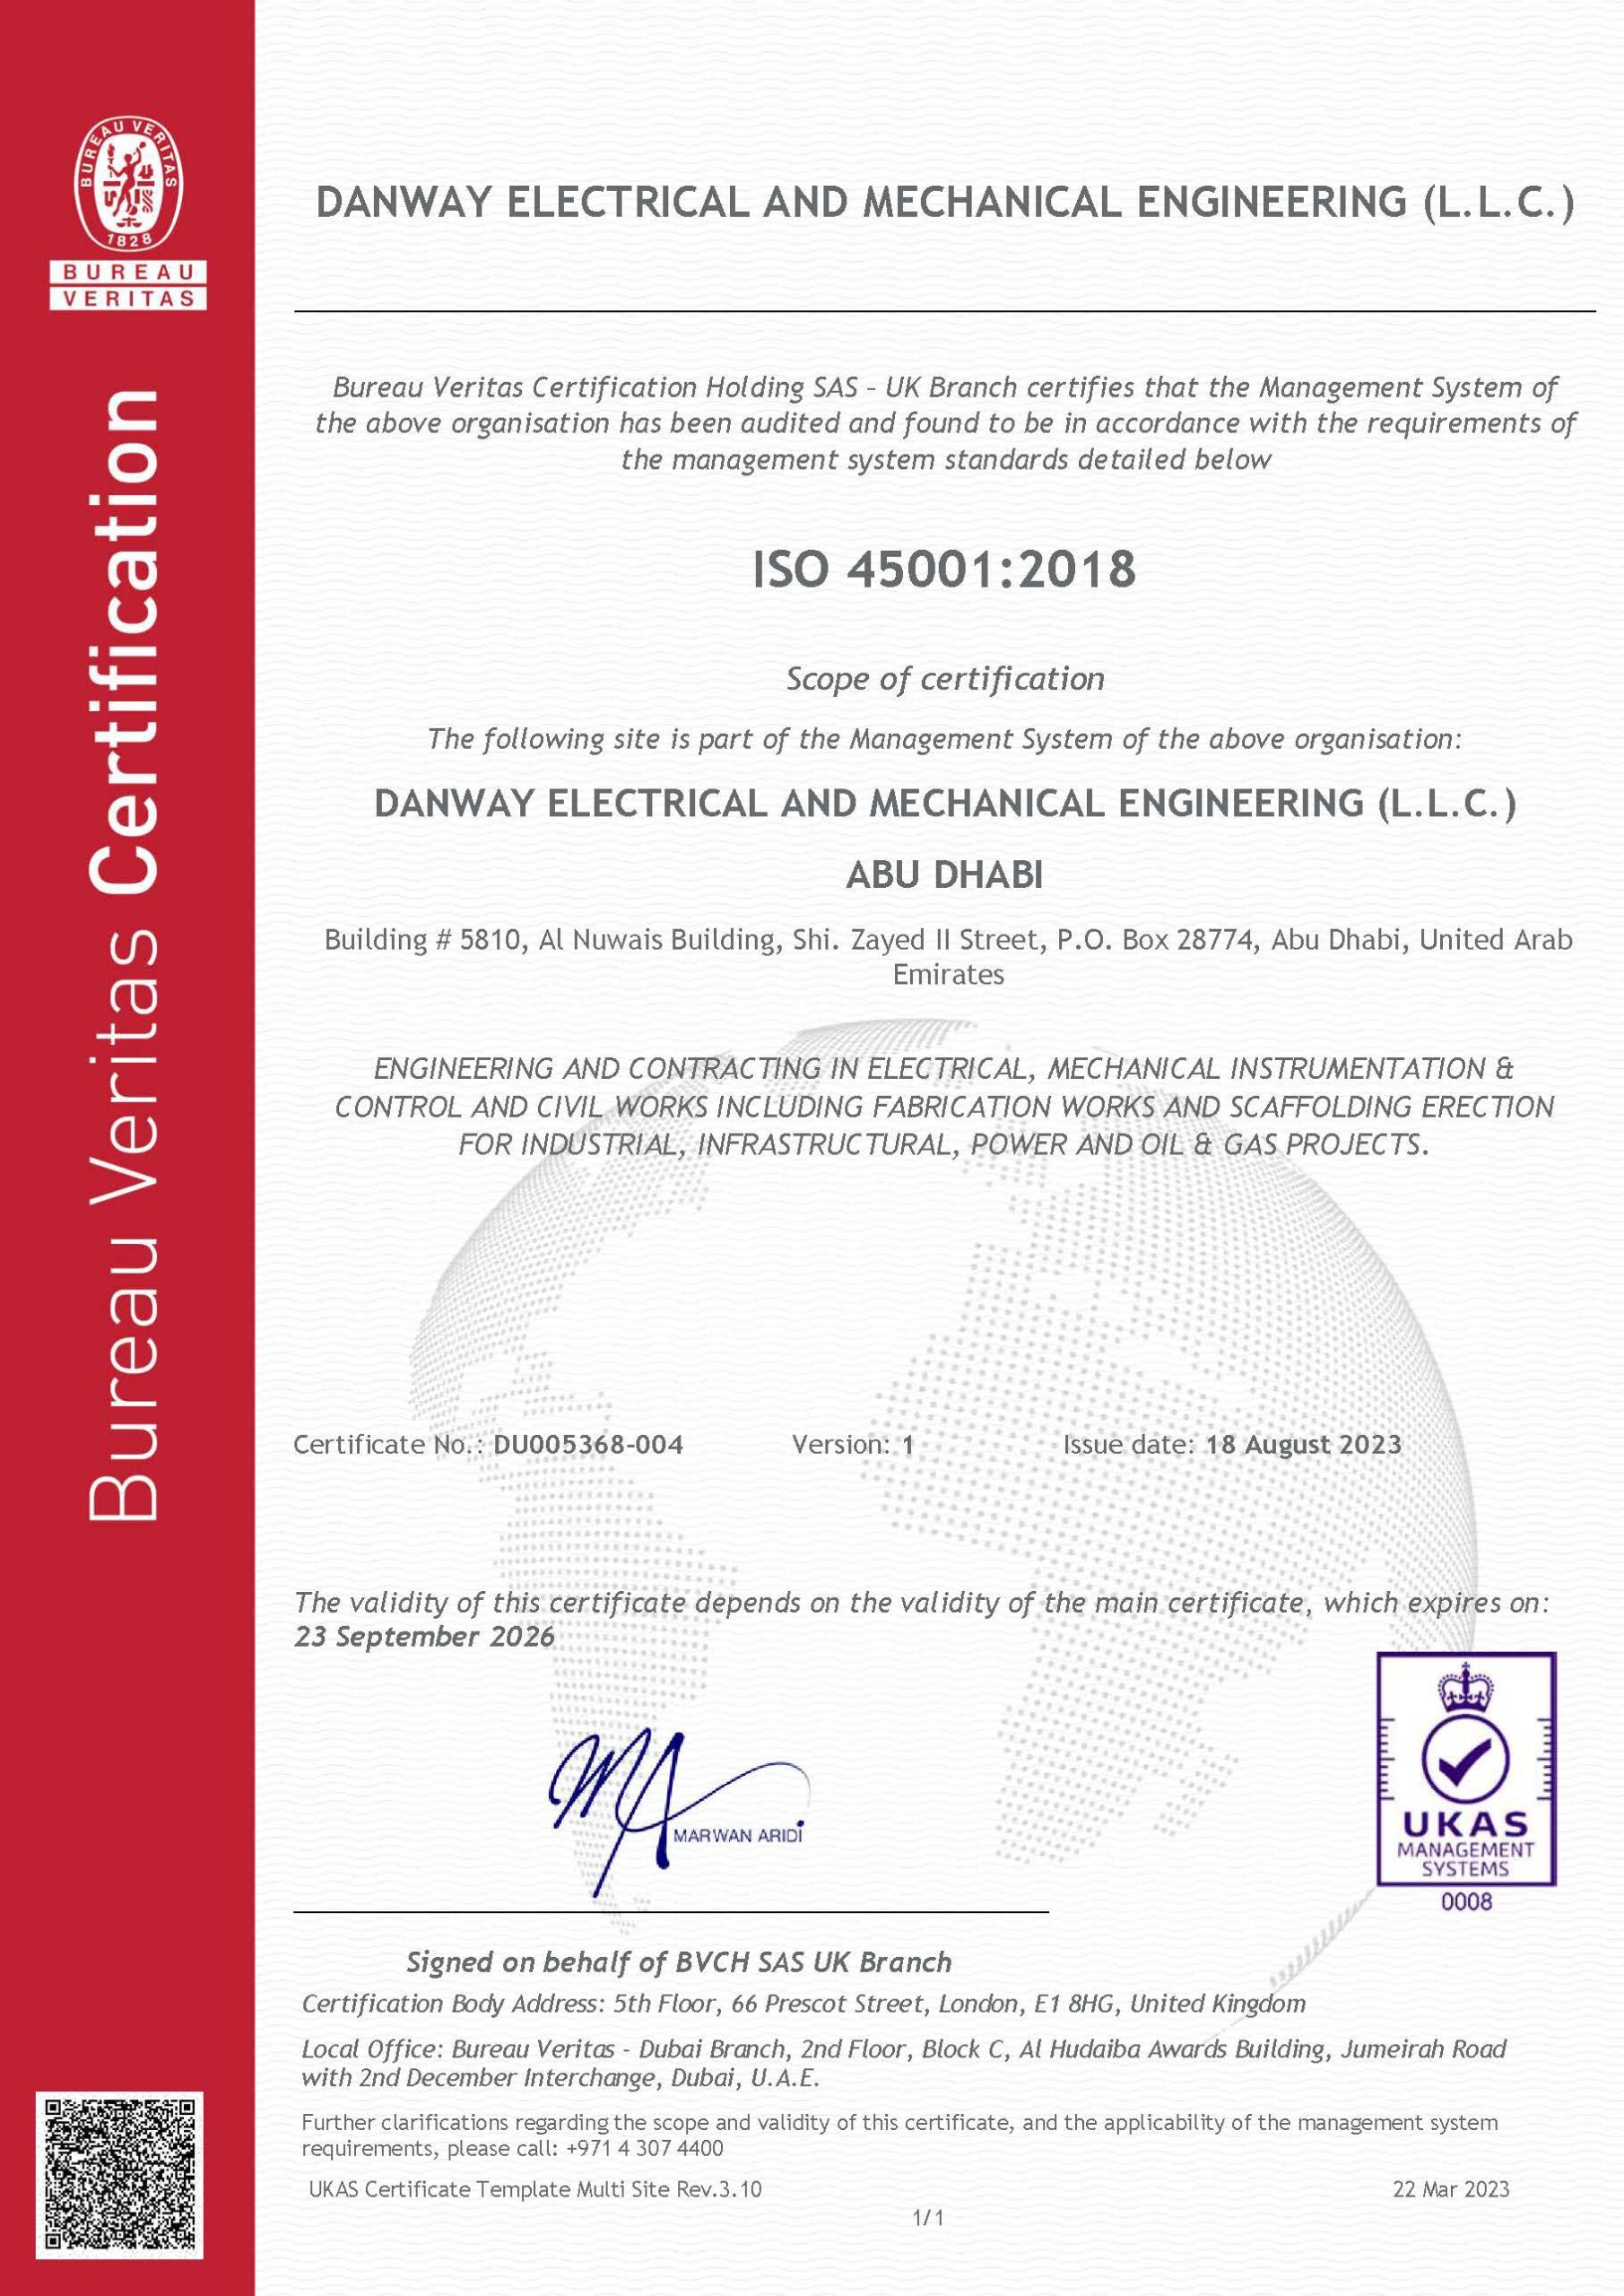 ISO45001:2018 Danway EME, Abu Dhabi